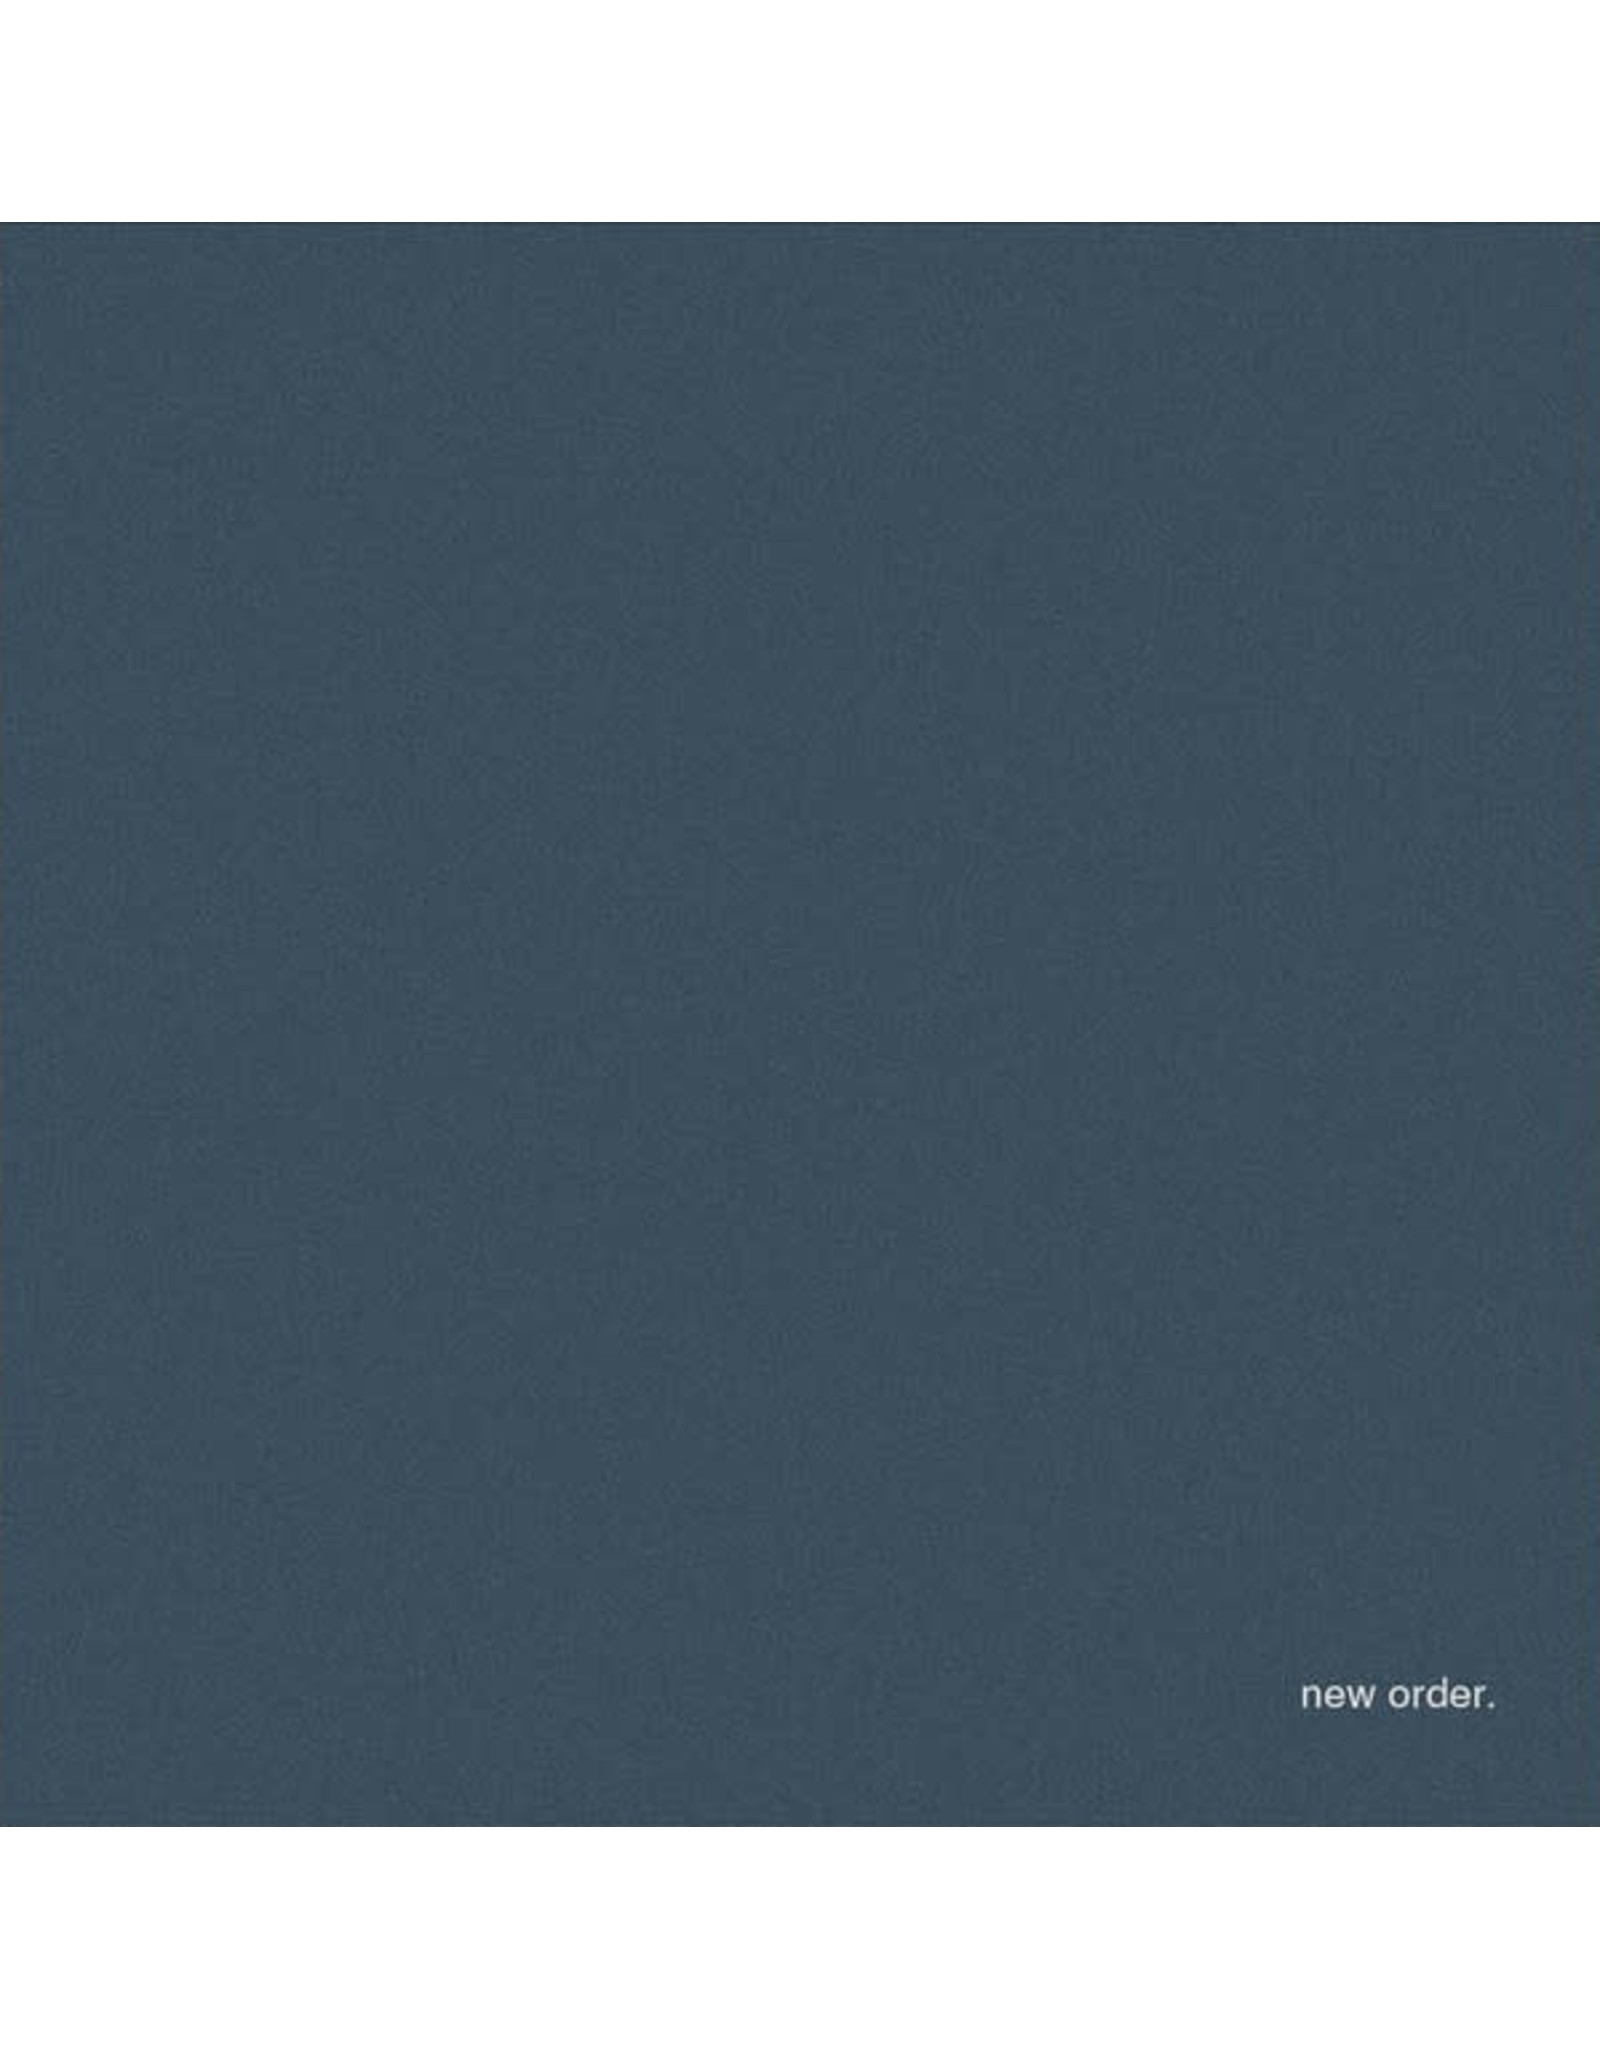 New Order - Be A Rebel [Remixes] 2LP (ltd. edition clear vinyl)